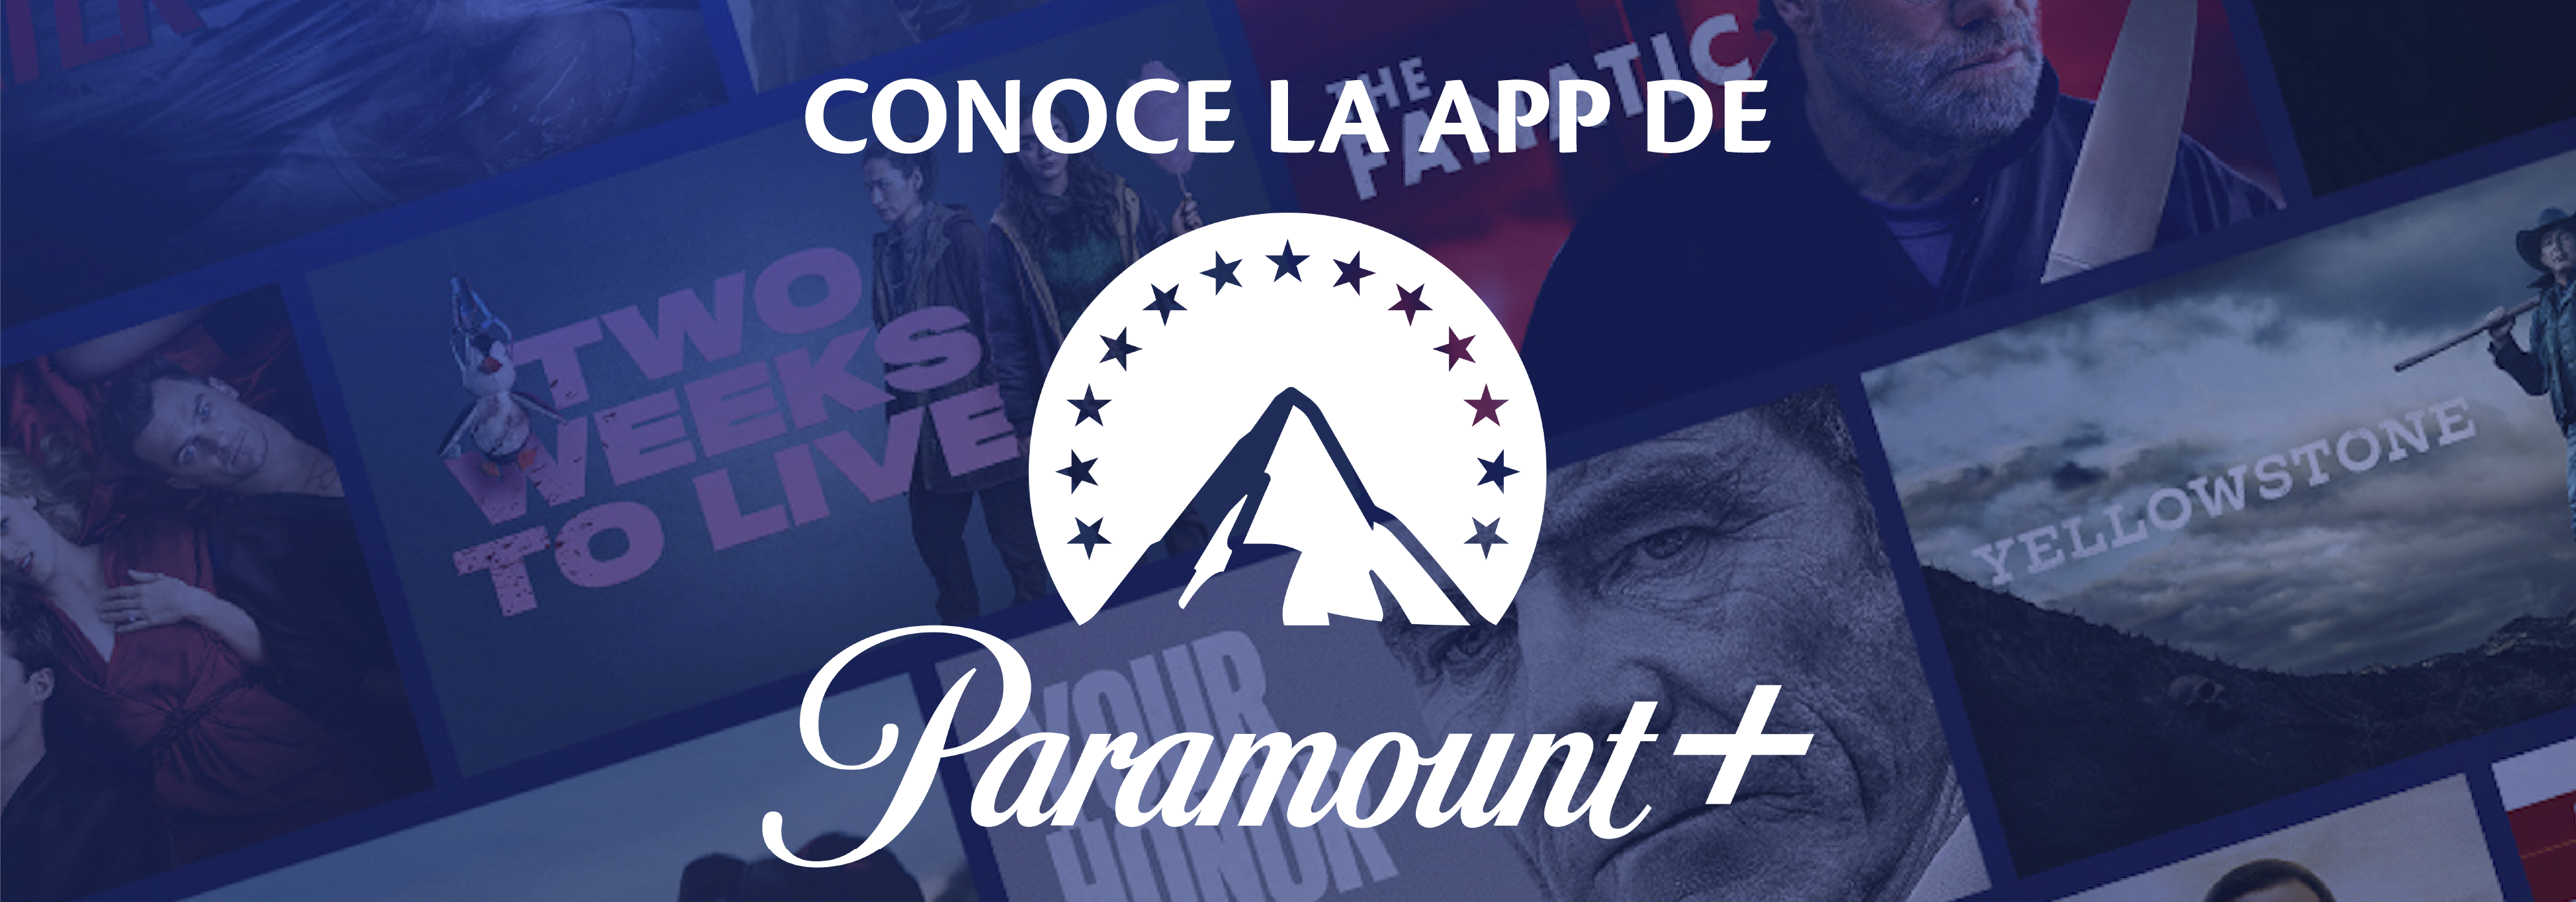 aw-app_de_paramount.png